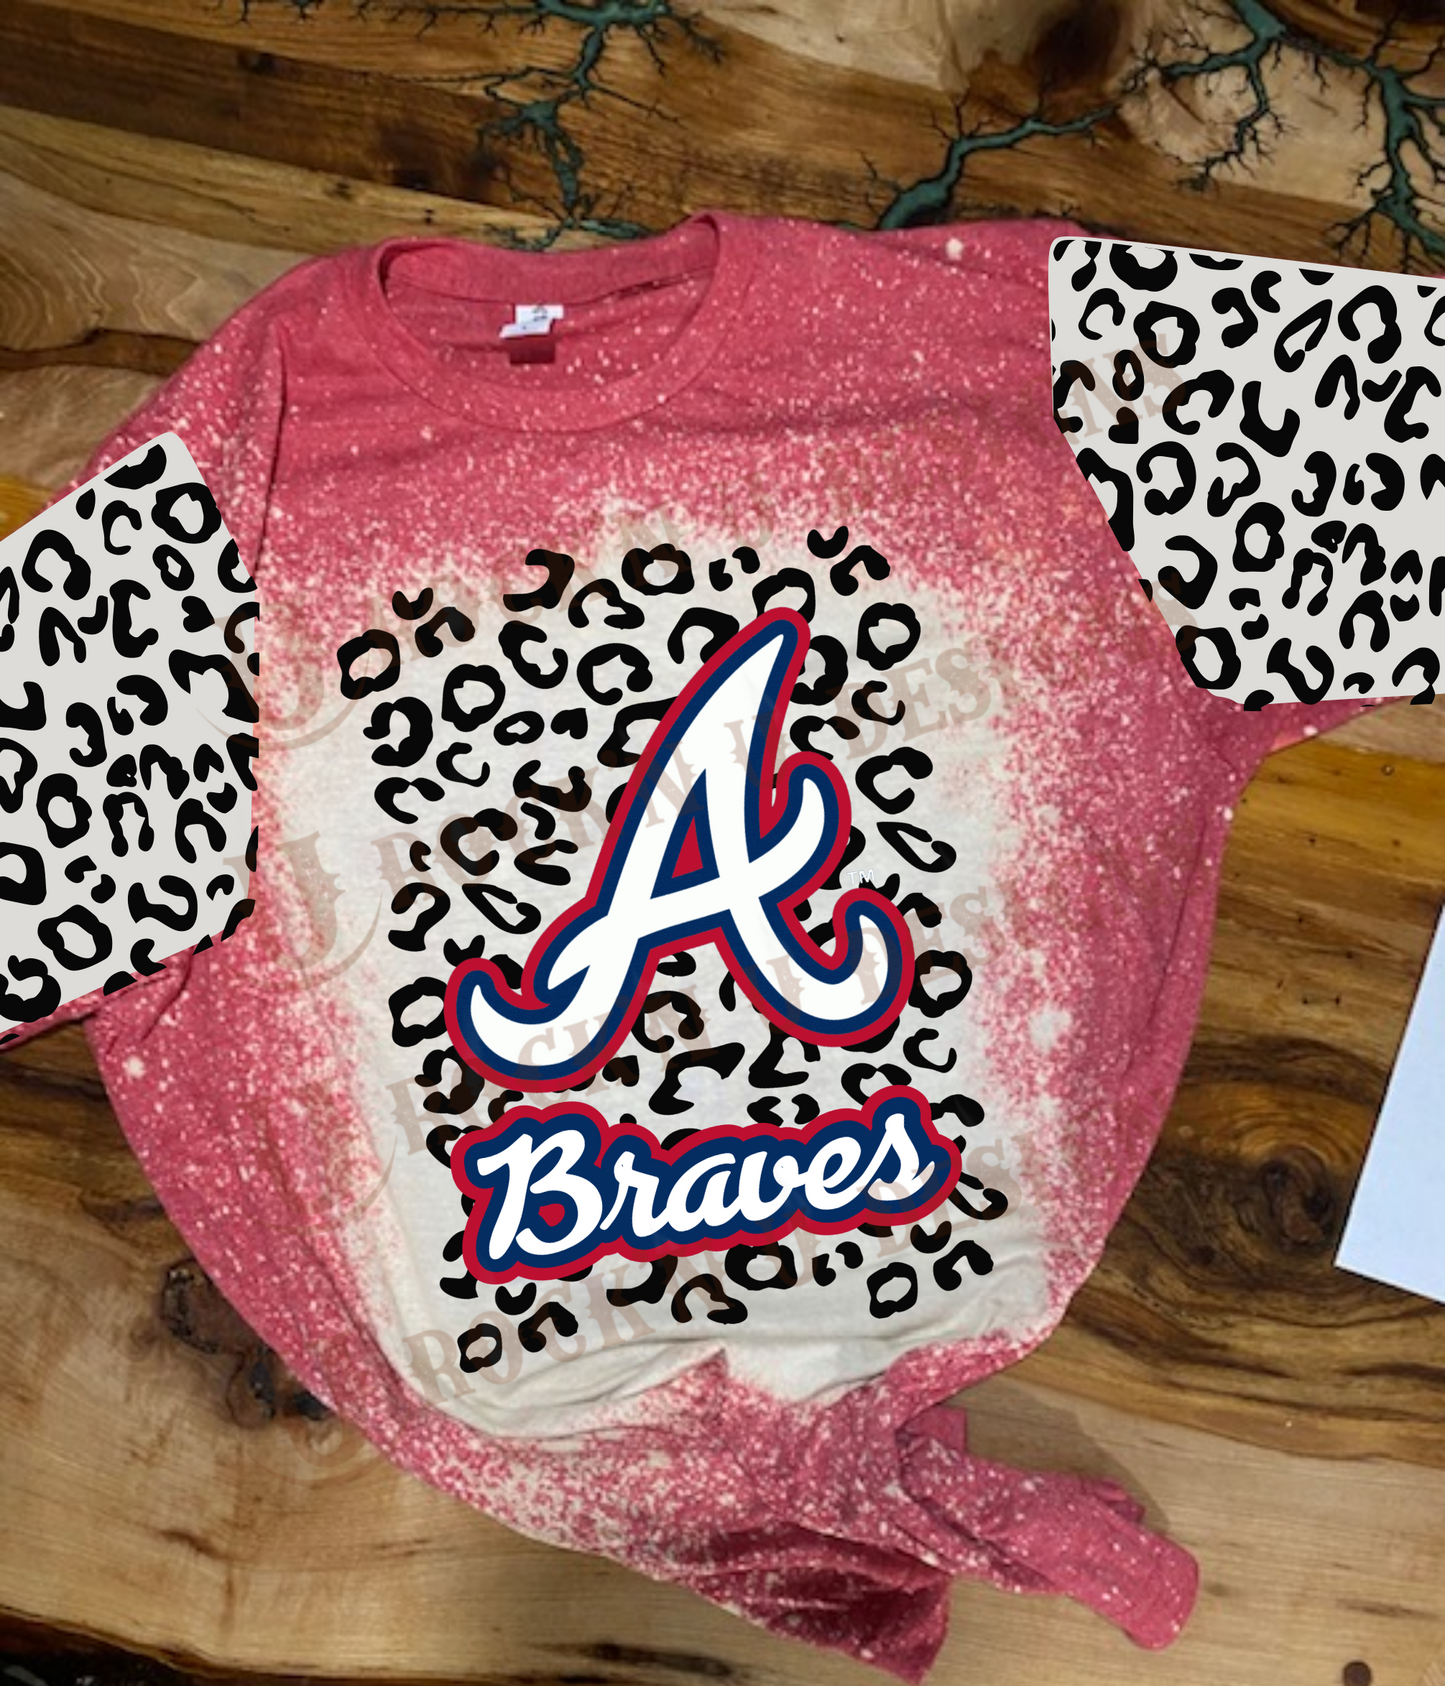 Custom Unisex T-shirt "Braves - BASEBALL" Leopard Design With Sleeves